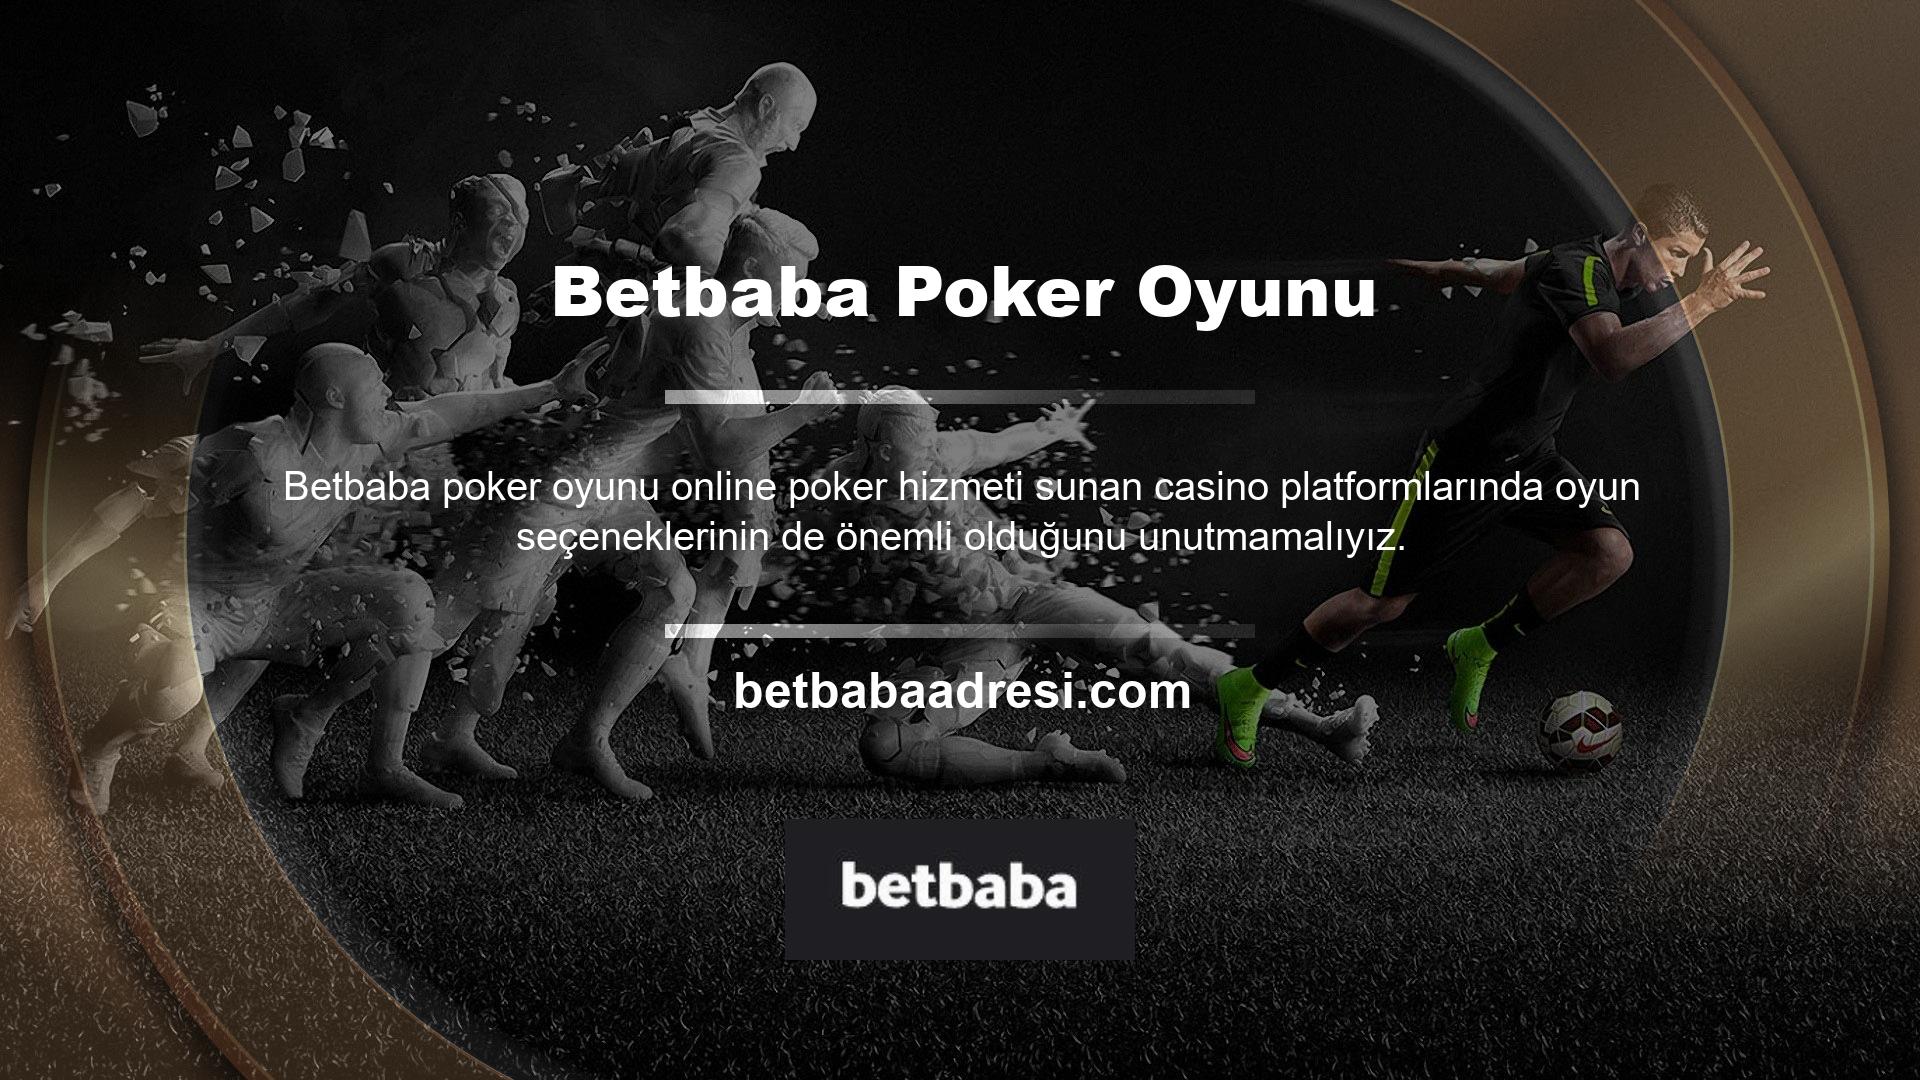 Betbaba canlı casino bölümünde Texas Hold'em, Caribbean Stud ve Three Card Poker gibi oyunlar bulunmaktadır